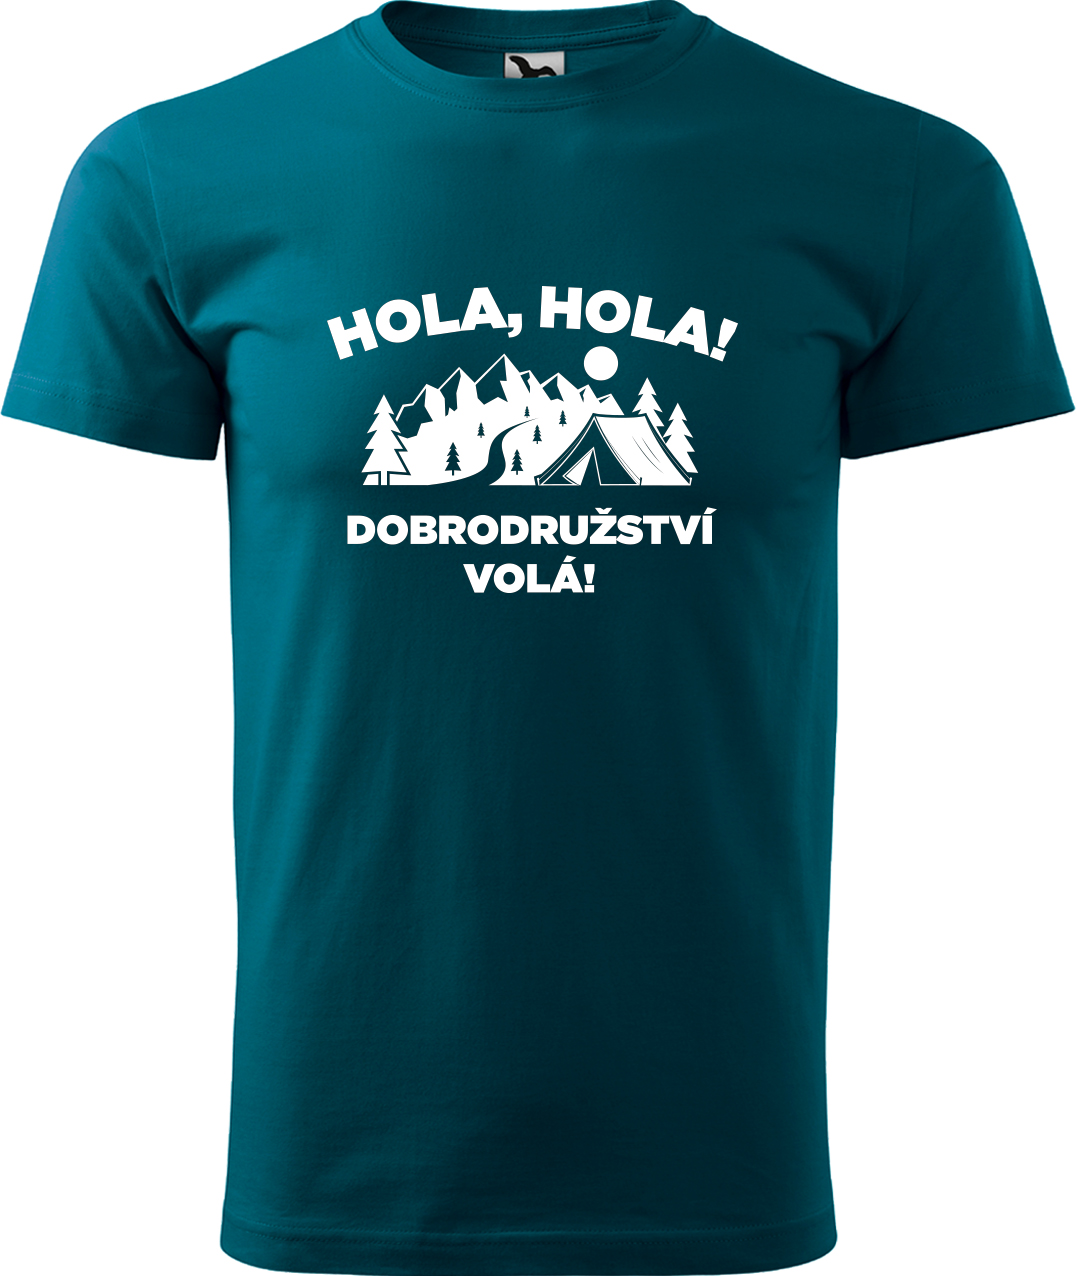 Pánské cestovatelské tričko - Hola hola! Dobrodružství volá! Velikost: S, Barva: Petrolejová (93), Střih: pánský